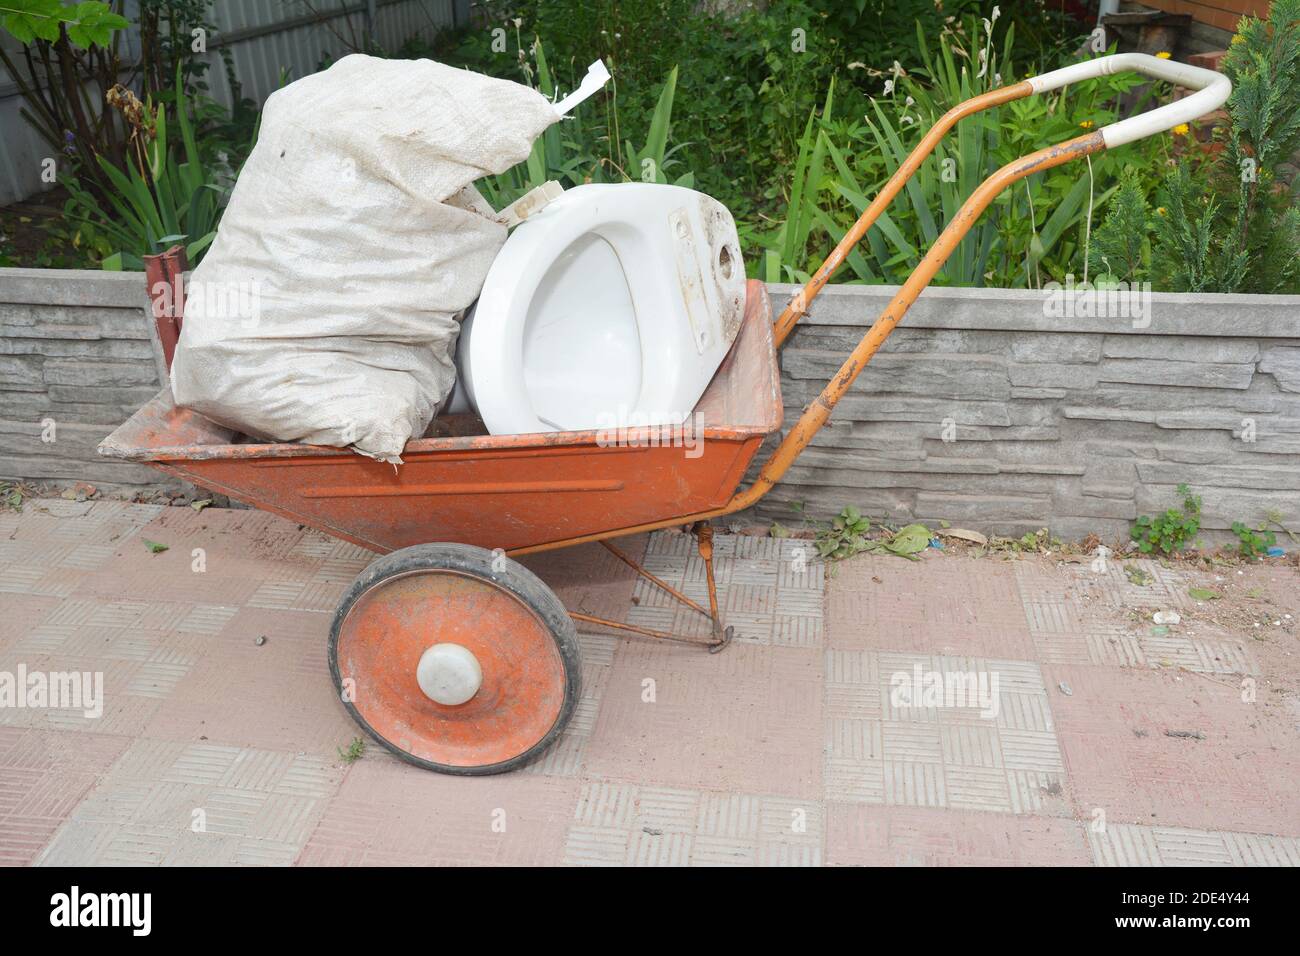 House construction garbage, toilet bowl on wheelbarrow Stock Photo